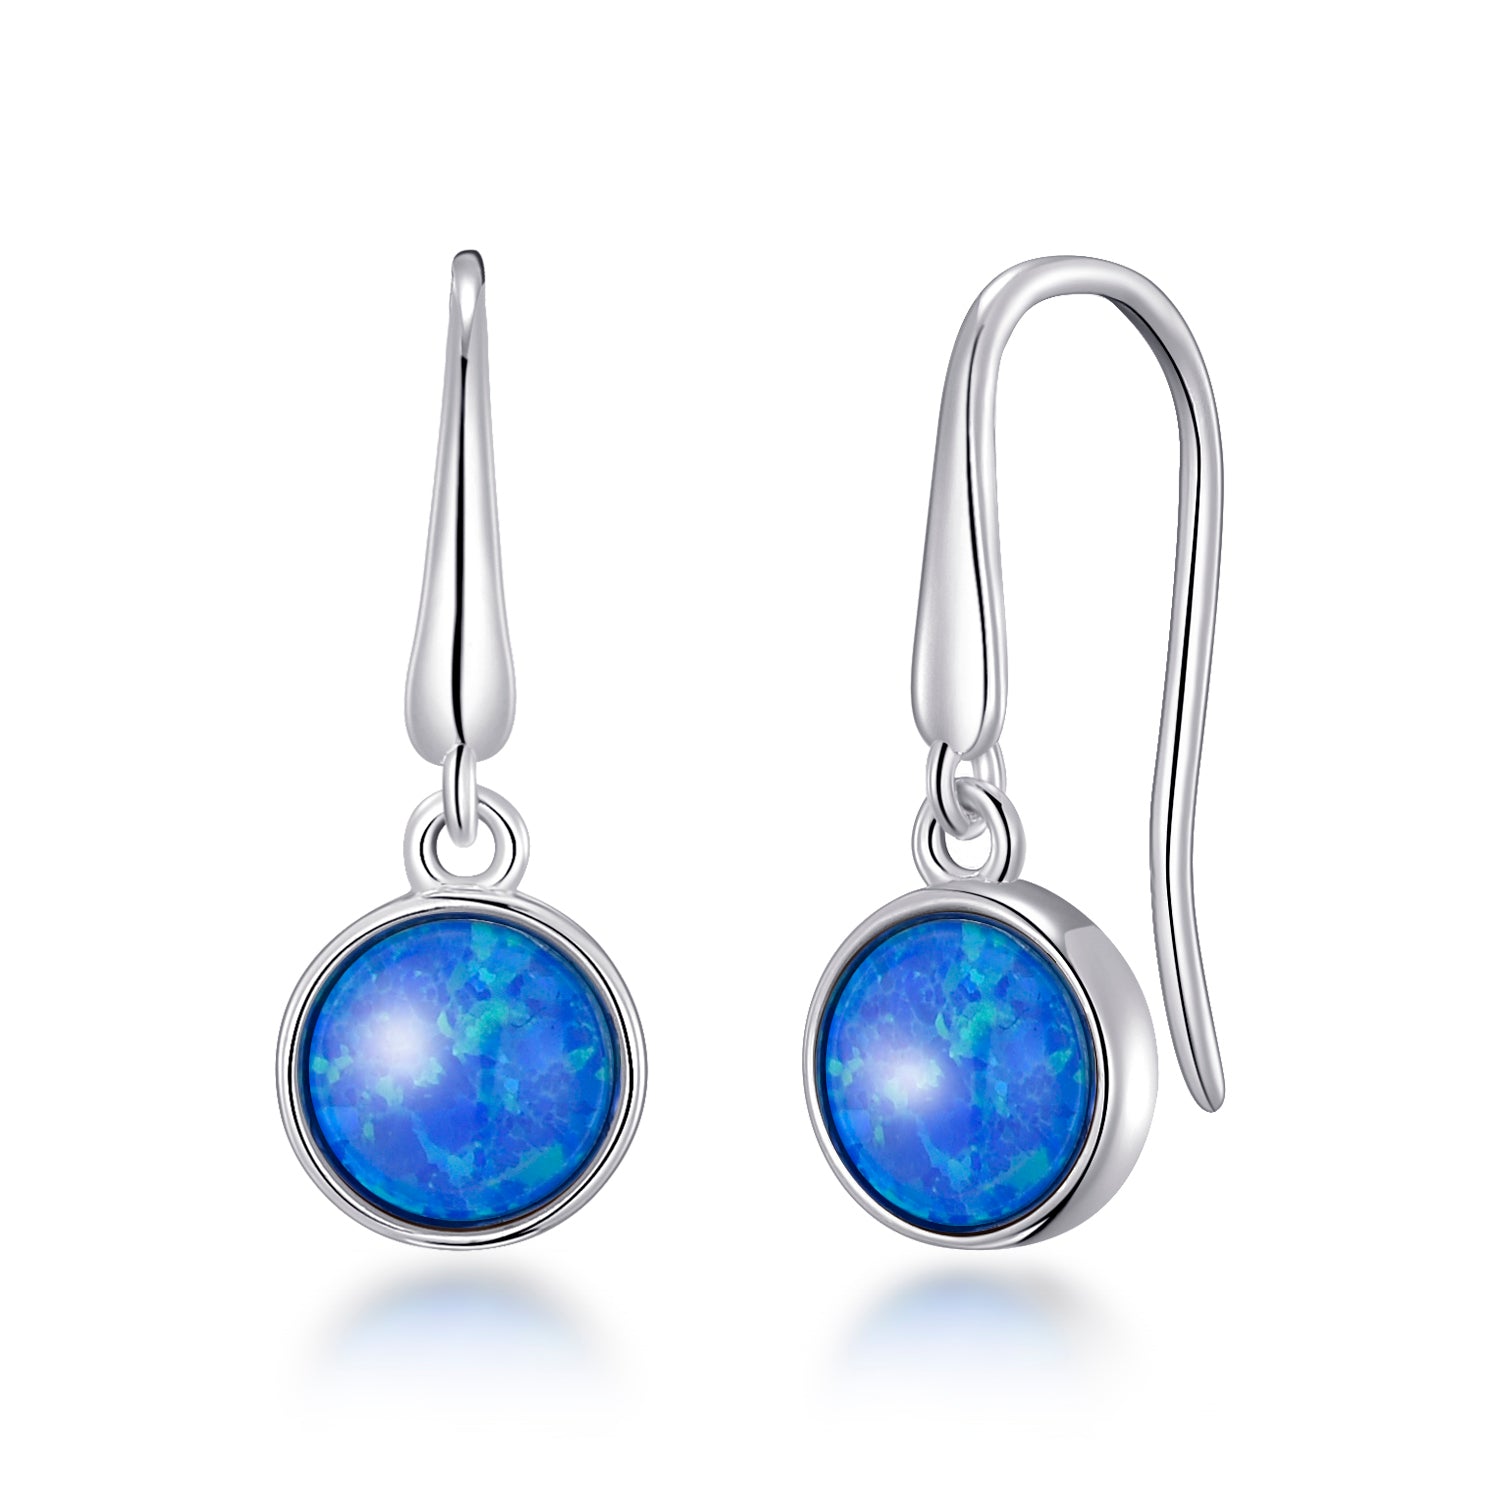 Synthetic Blue Opal Drop Earrings by Philip Jones Jewellery